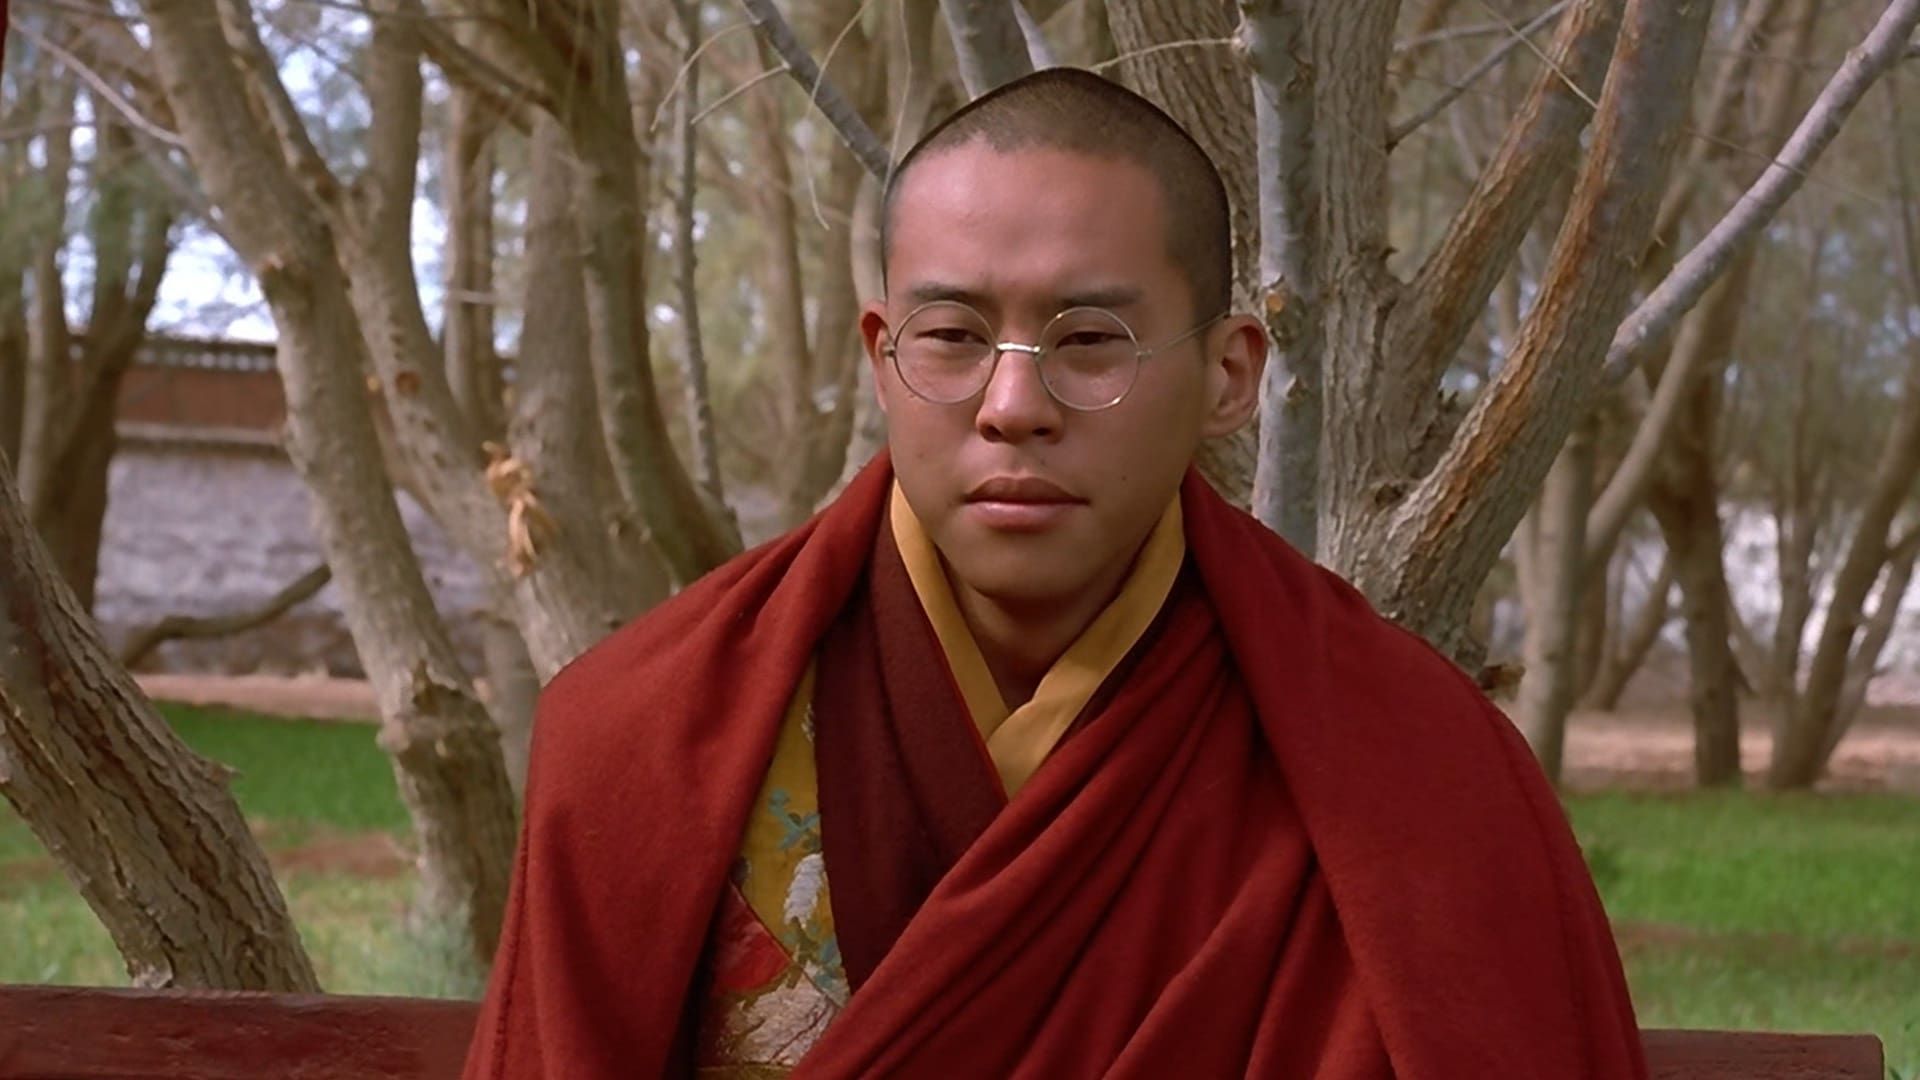 دانلود فیلم Kundun 1997